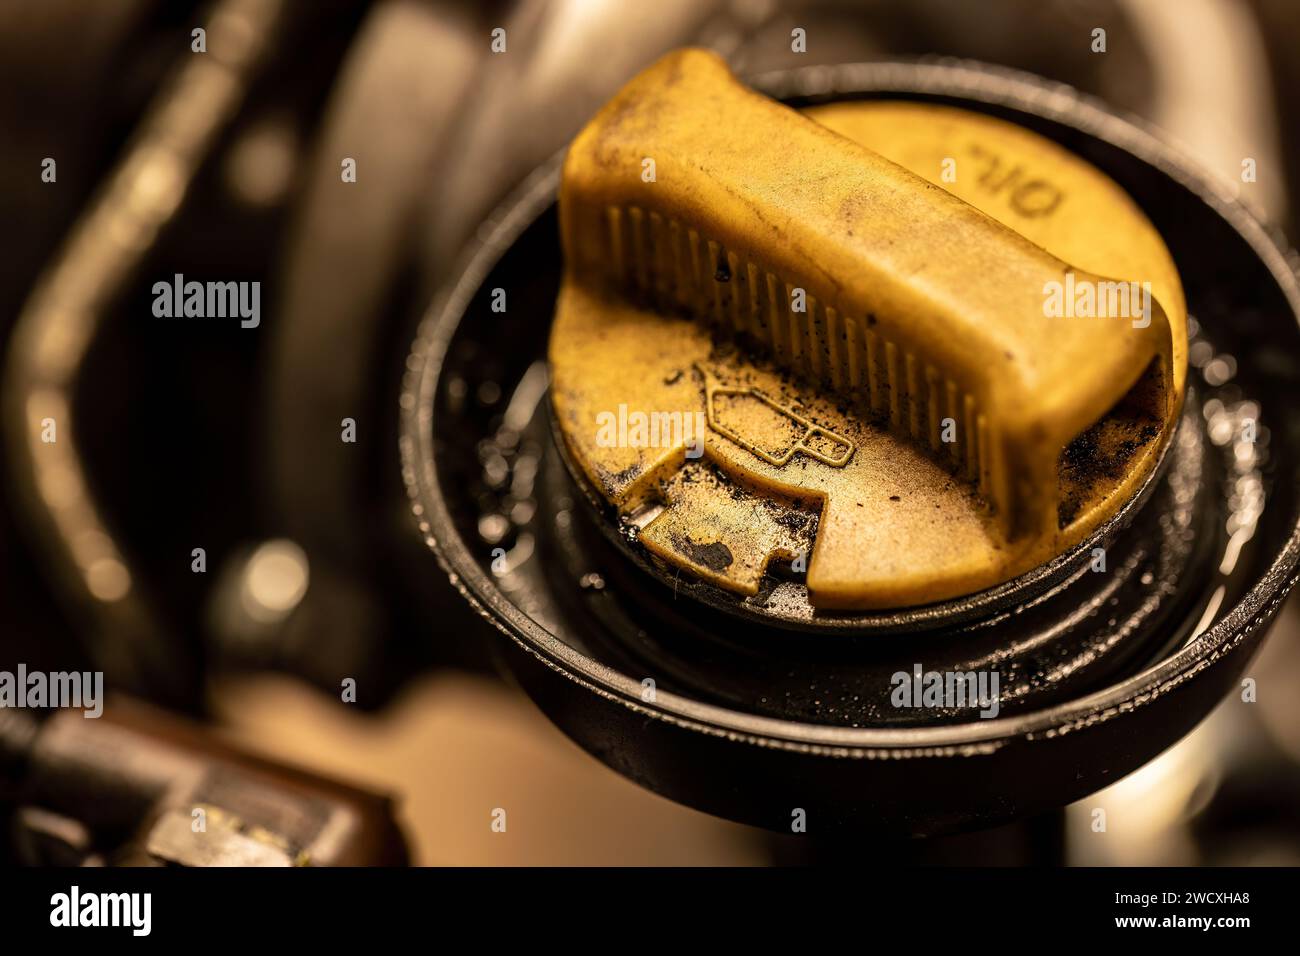 La photo montre un bouchon d'huile sale sur un moteur de voiture, symbolisant le besoin urgent d'entretien du véhicule. Banque D'Images